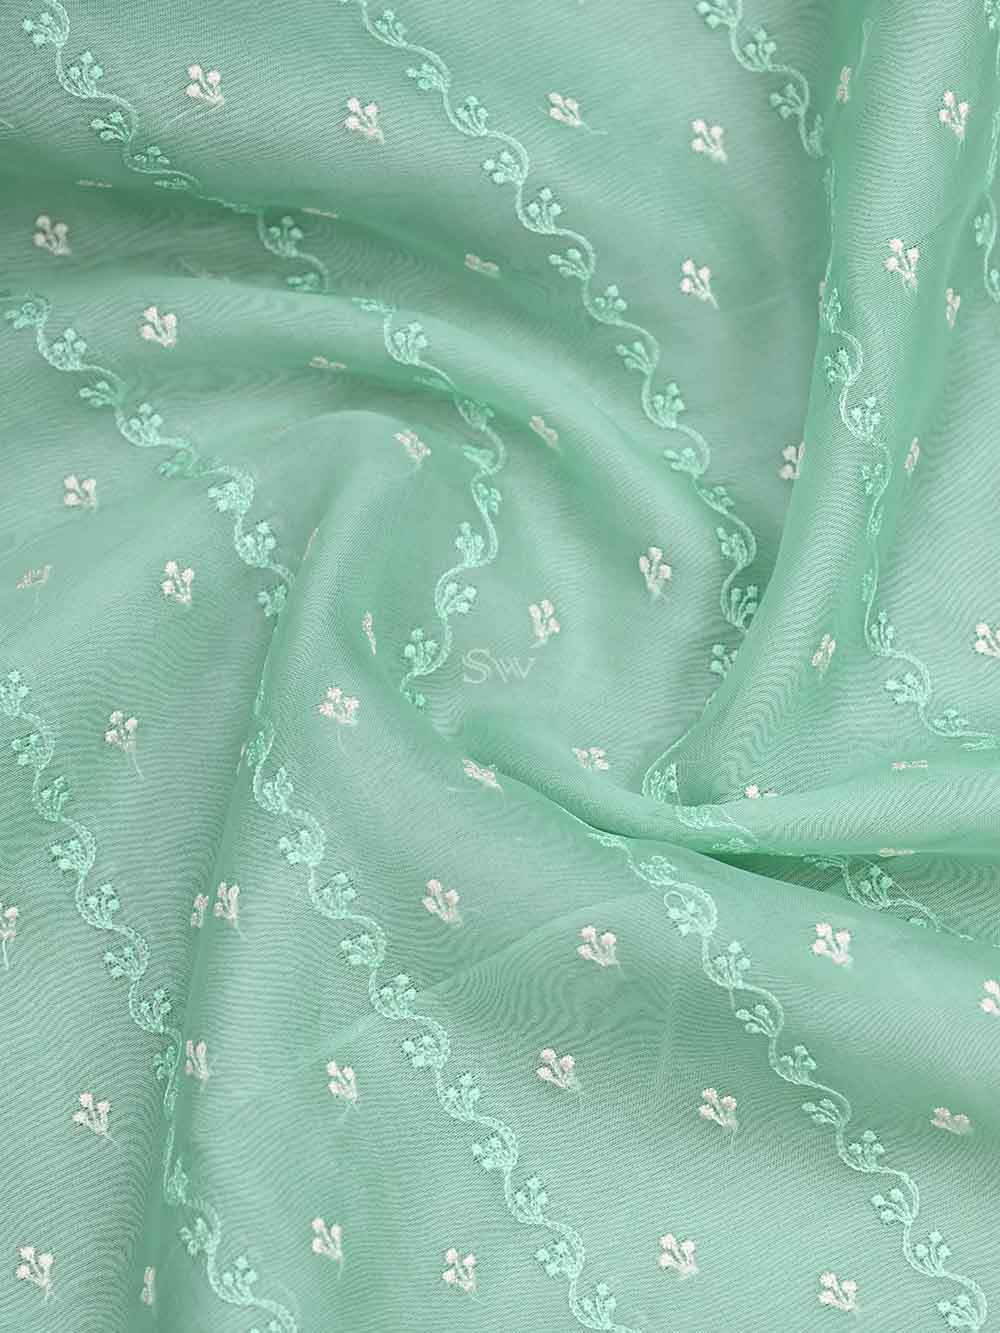 Sea Green Organza Handloom Banarasi Suit - Sacred Weaves